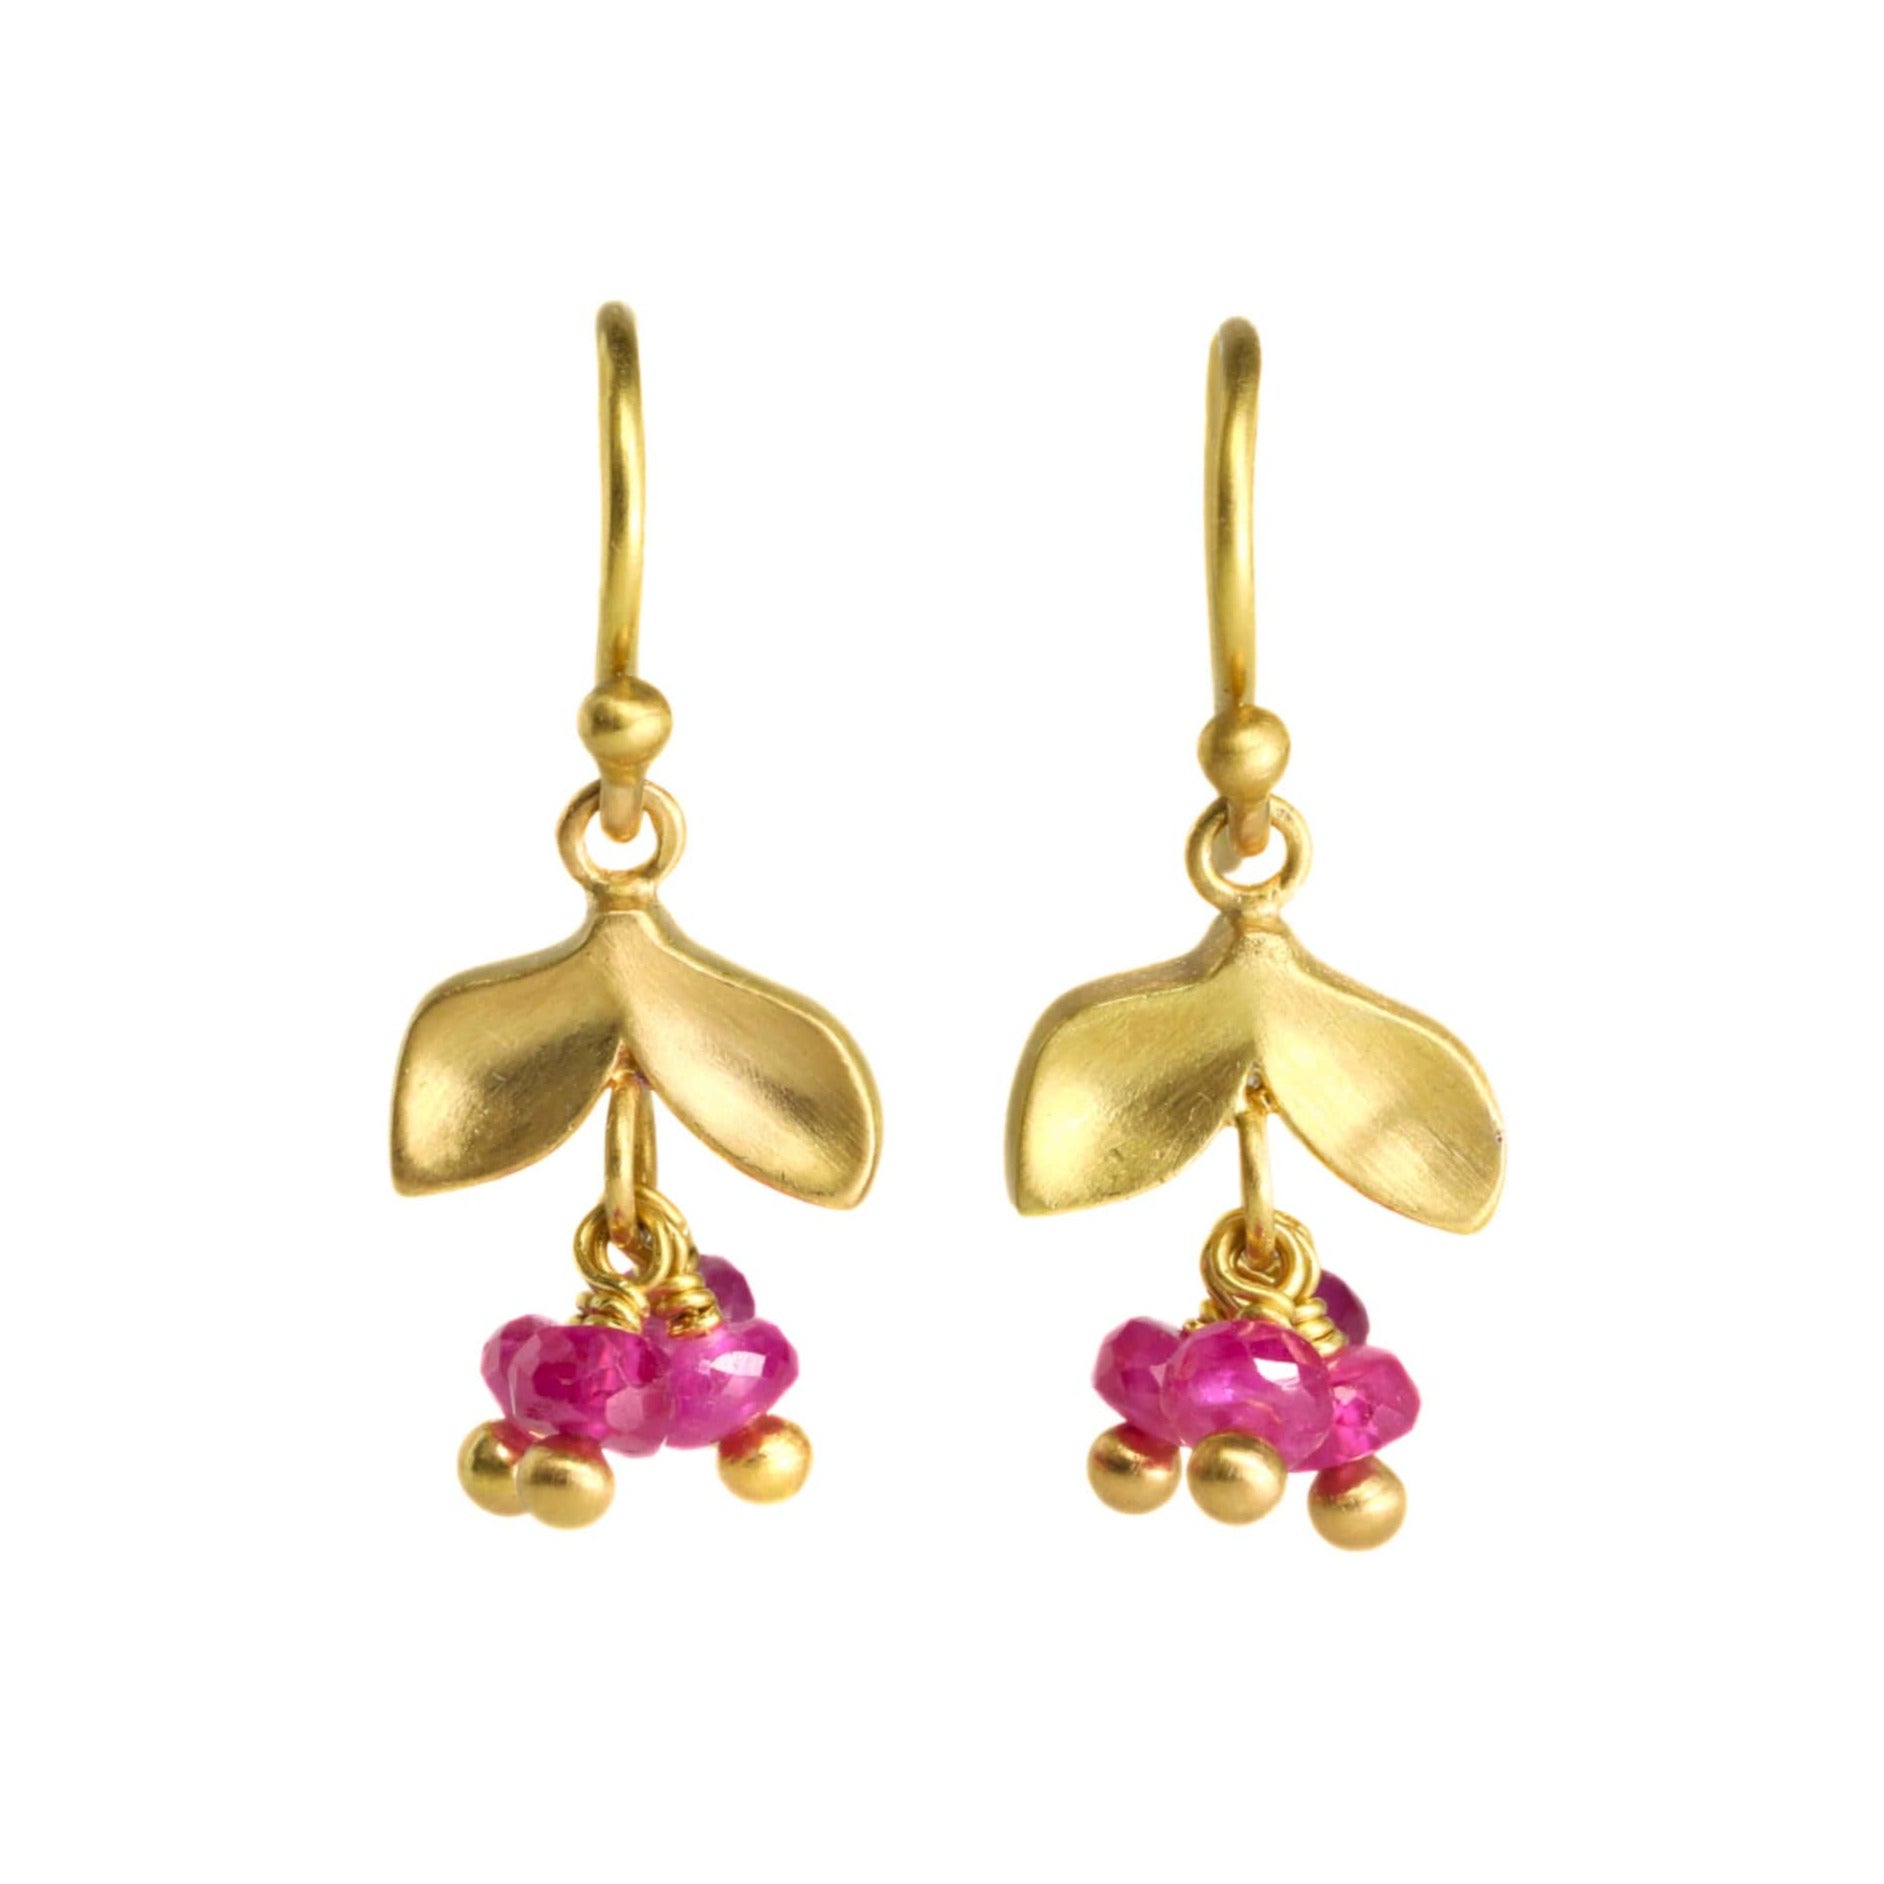 Caroline Ellen 20K Gold Laurel Earrings with Three Dangling Ruby Stones